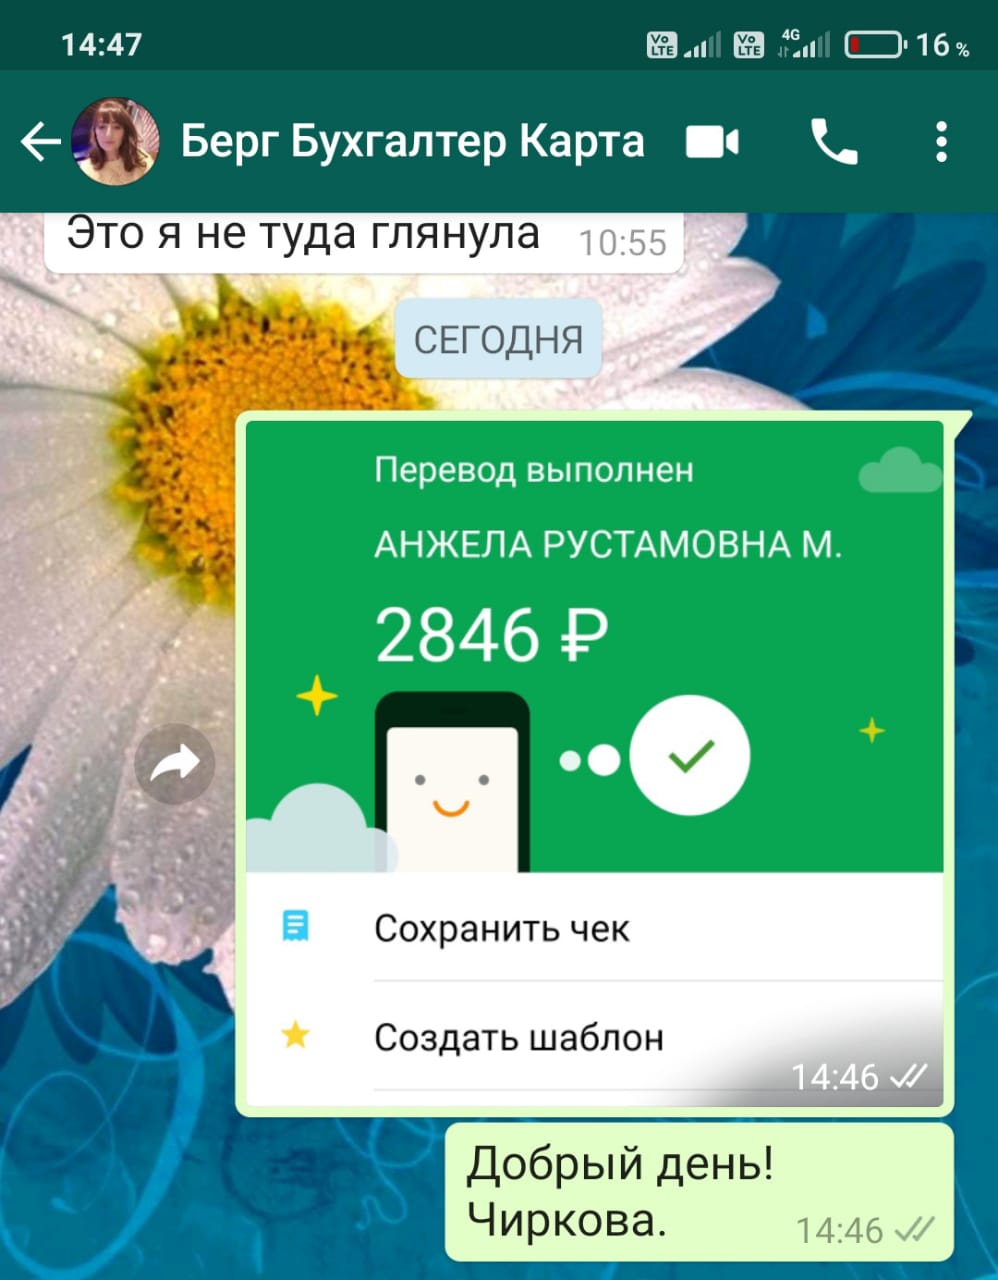 WhatsApp Image 2020-11-24 at 14.47.19.jpeg